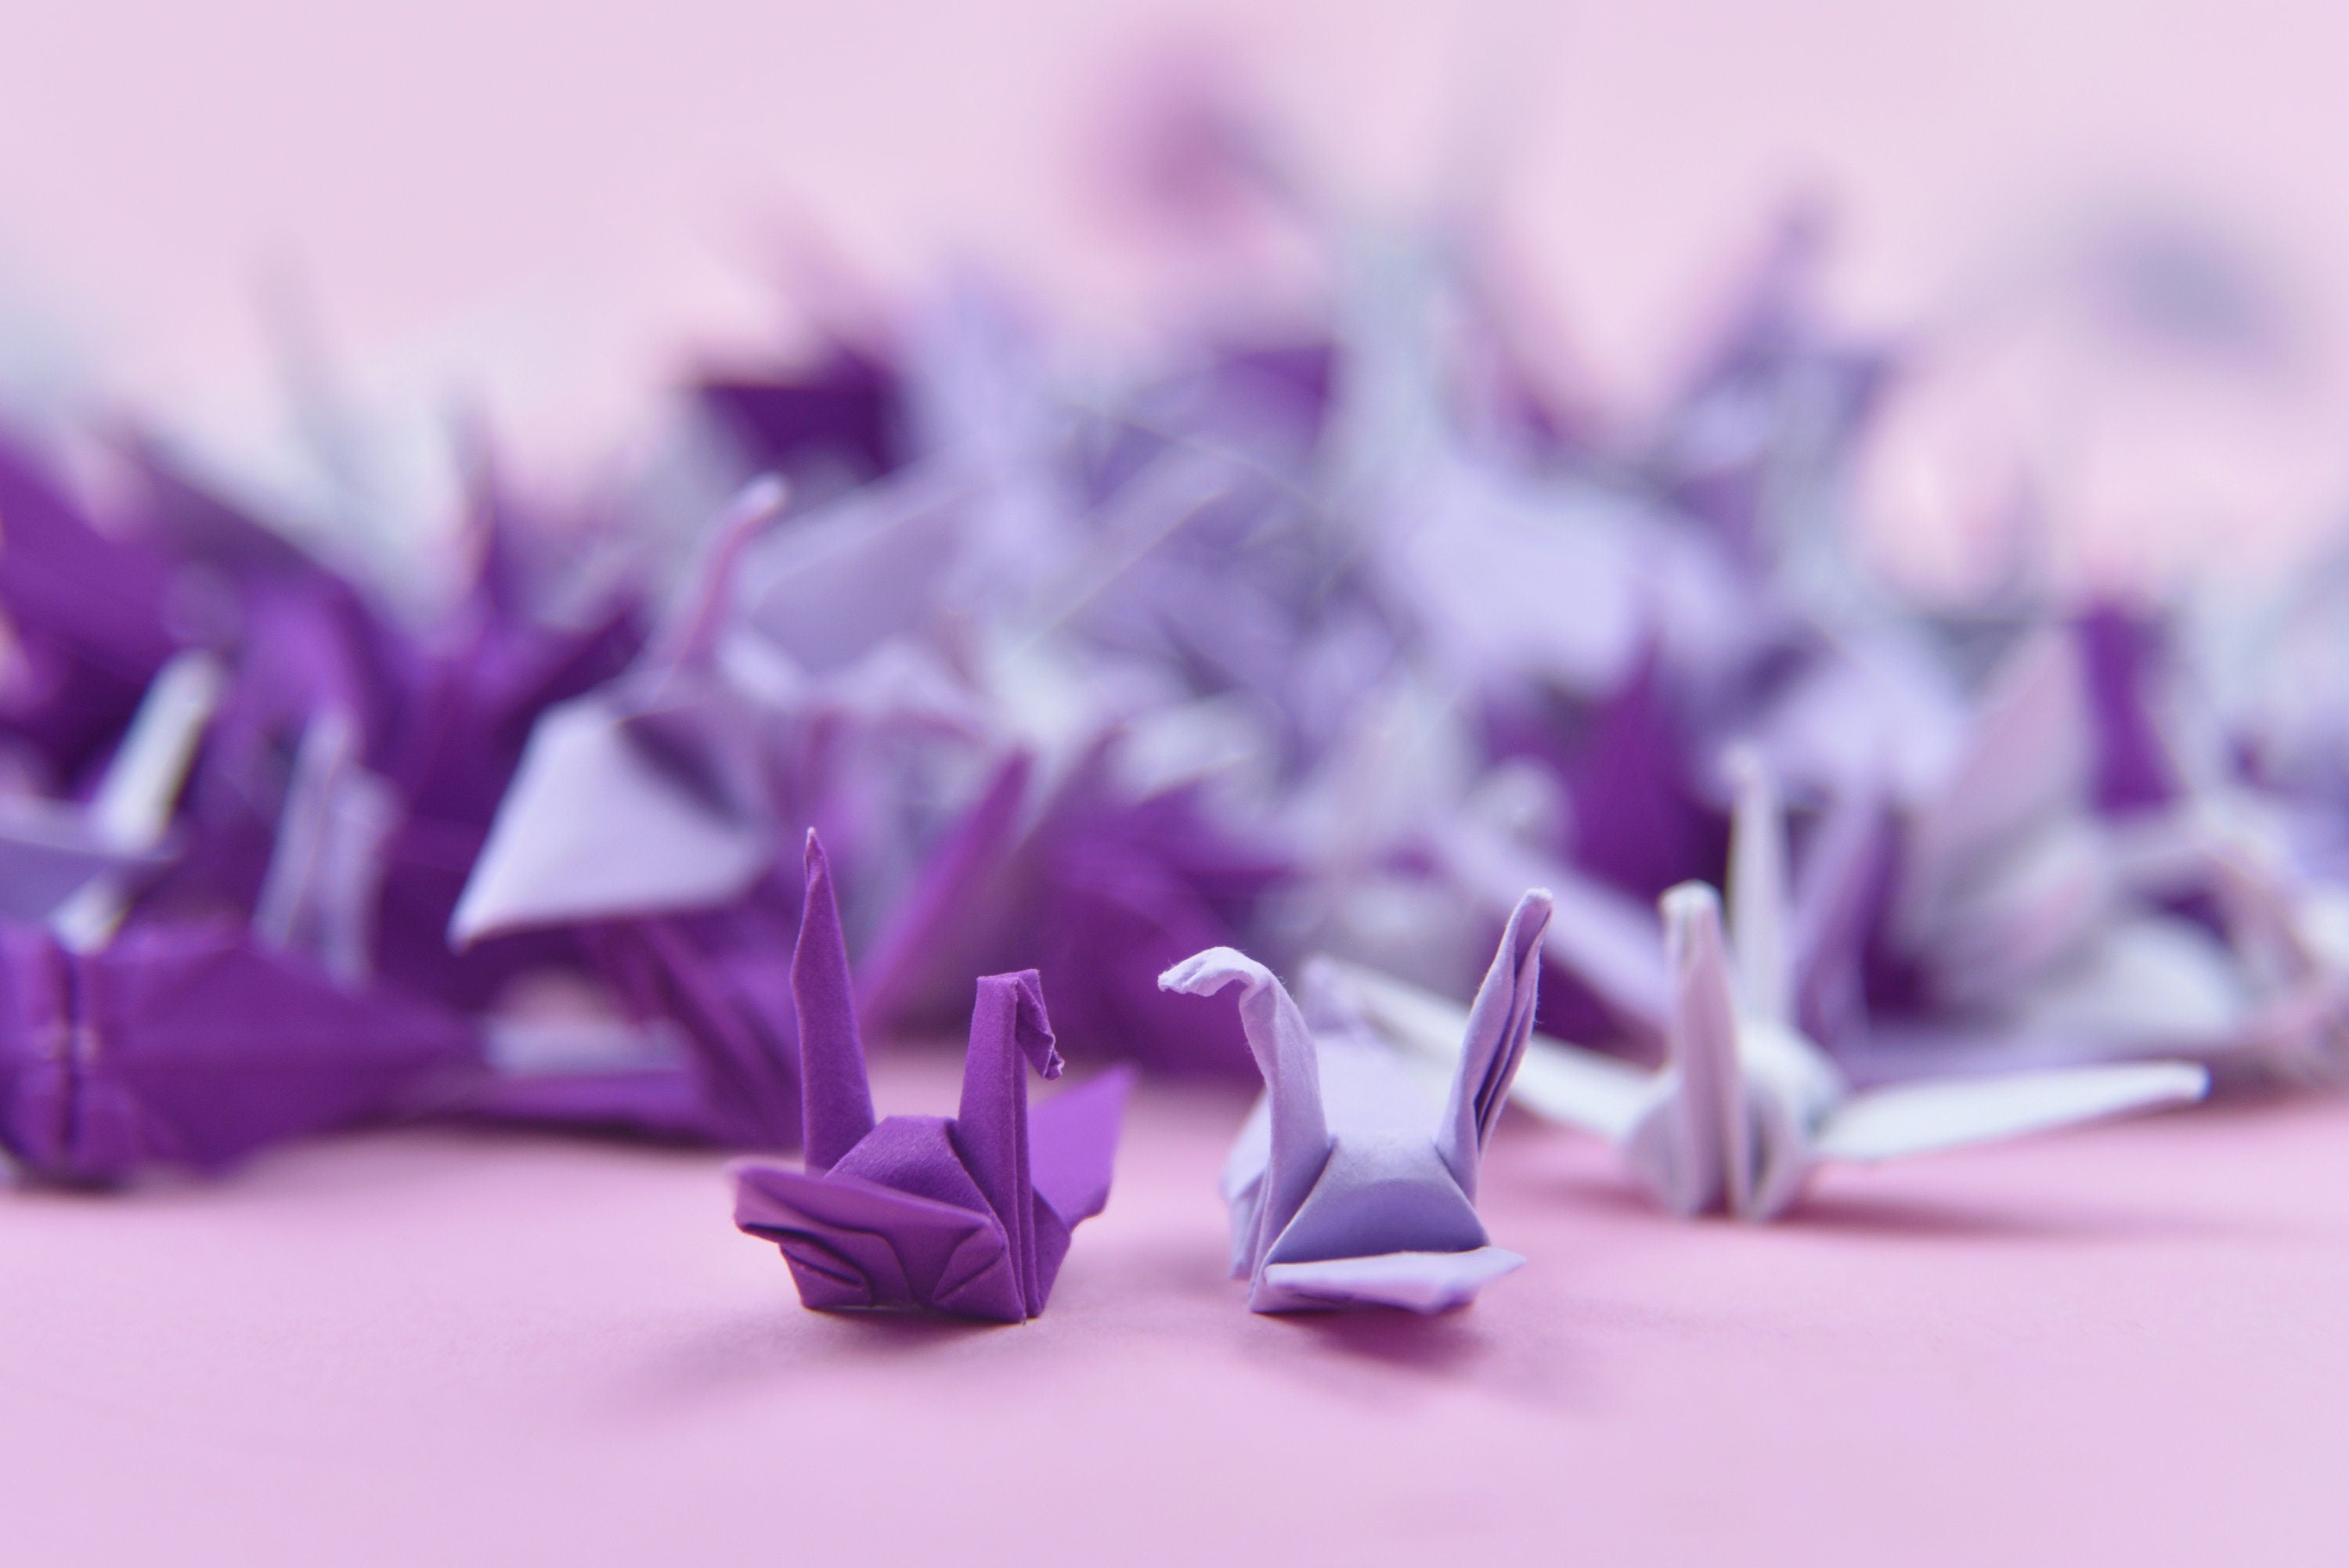 100 Origami Paper Crane Purple Shade Origami Cranes Pre Made Small 1.5x1.5 inches for Wedding Decor, Anniversary Gift, Valentine